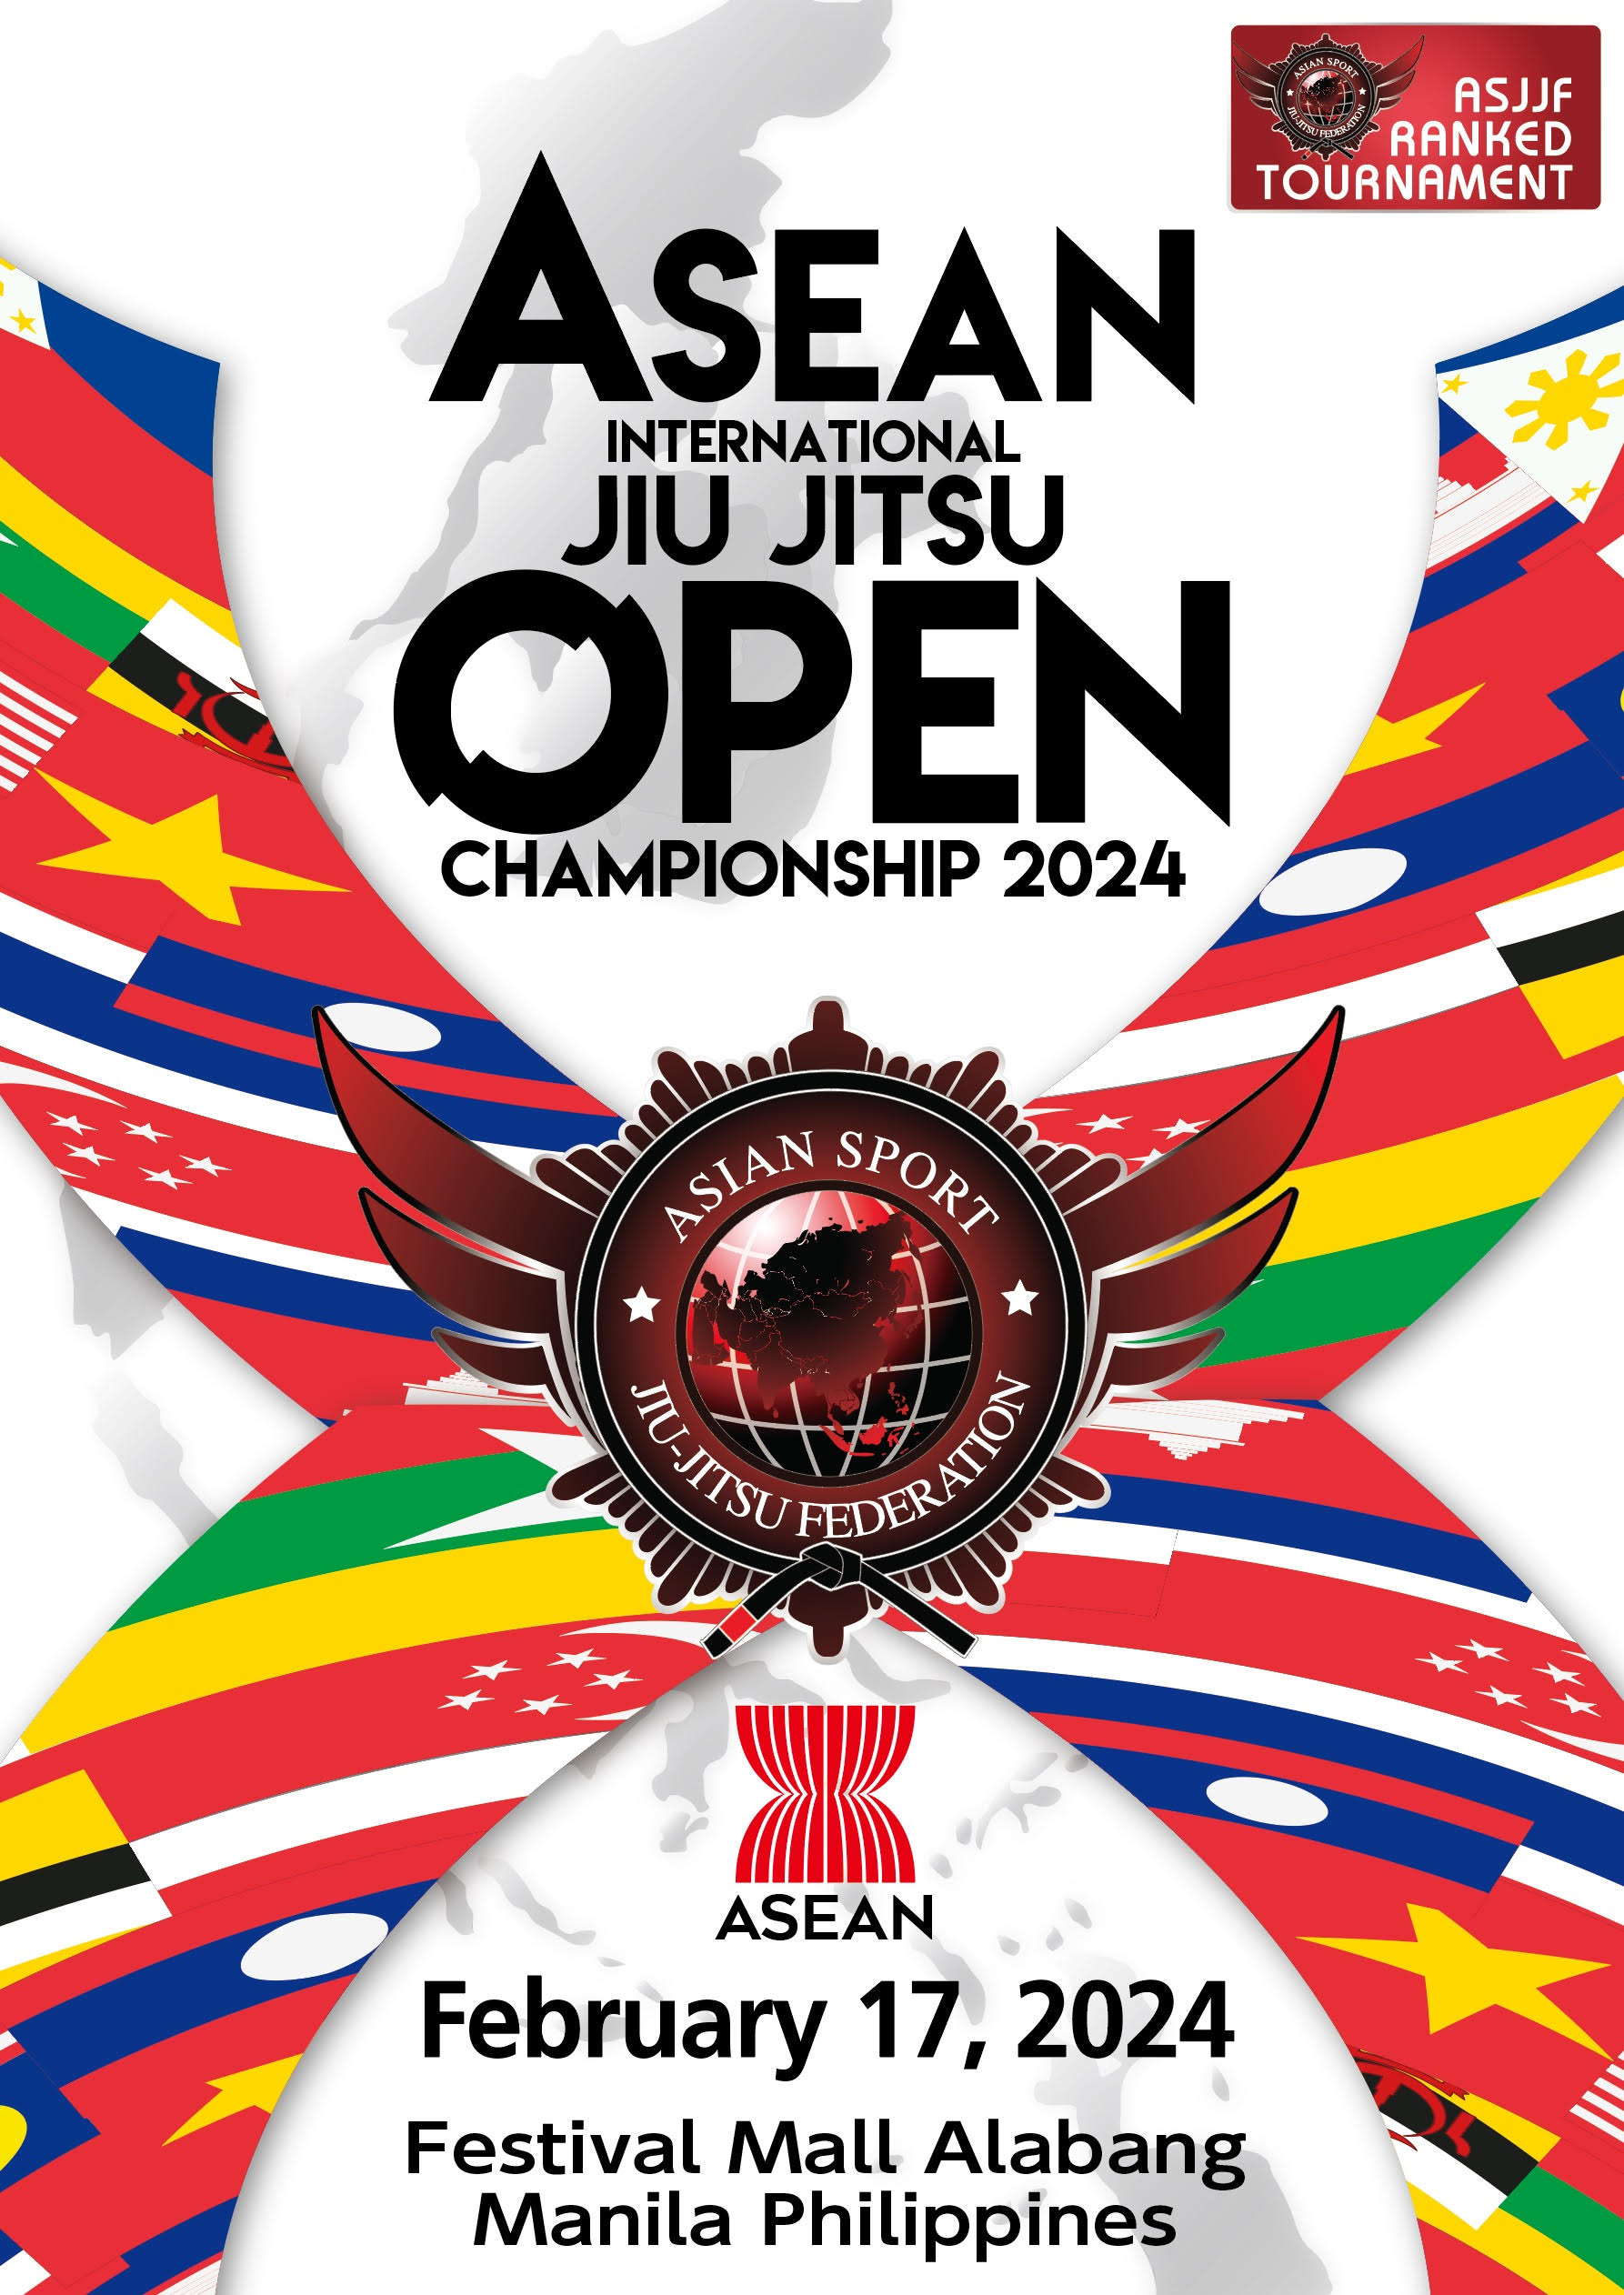 asean international jiu jitsu open championship 2024